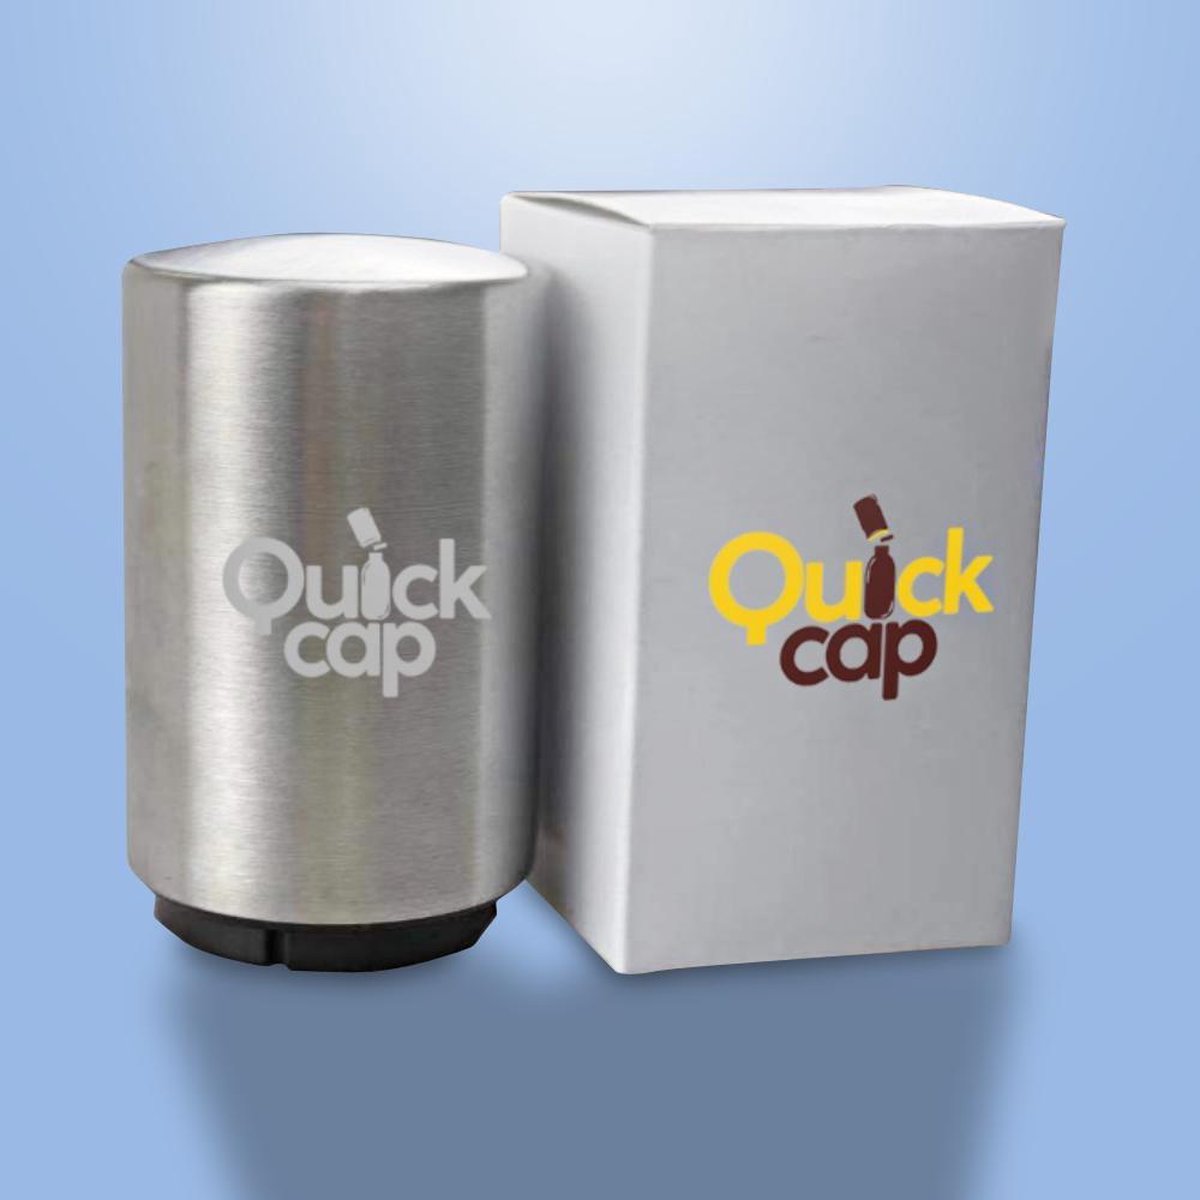 Quickcap Automatische roestvrijstalen flesopener - Flessenopener - Bieropener - Flesopener - Roest vrij staal - Premium - Druksysteem - Duurzaam - Luxe opener - Schieter - Sleutelhanger - Doppen verwijderen - Druksysteem - Bierpakket -ouvre-bière - QuickCap